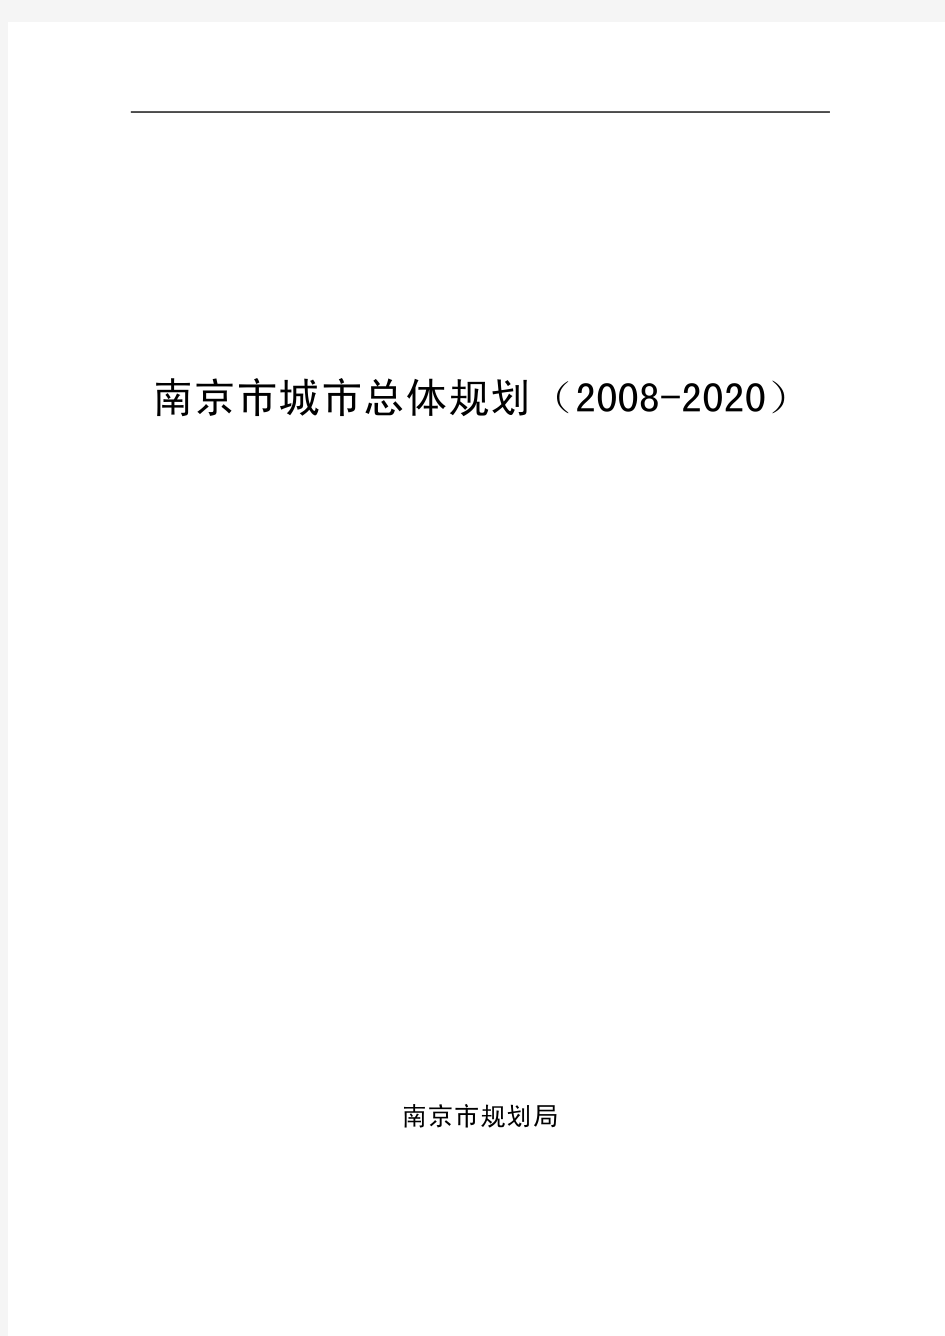 南京市城市总体规划(2008-2020)文本